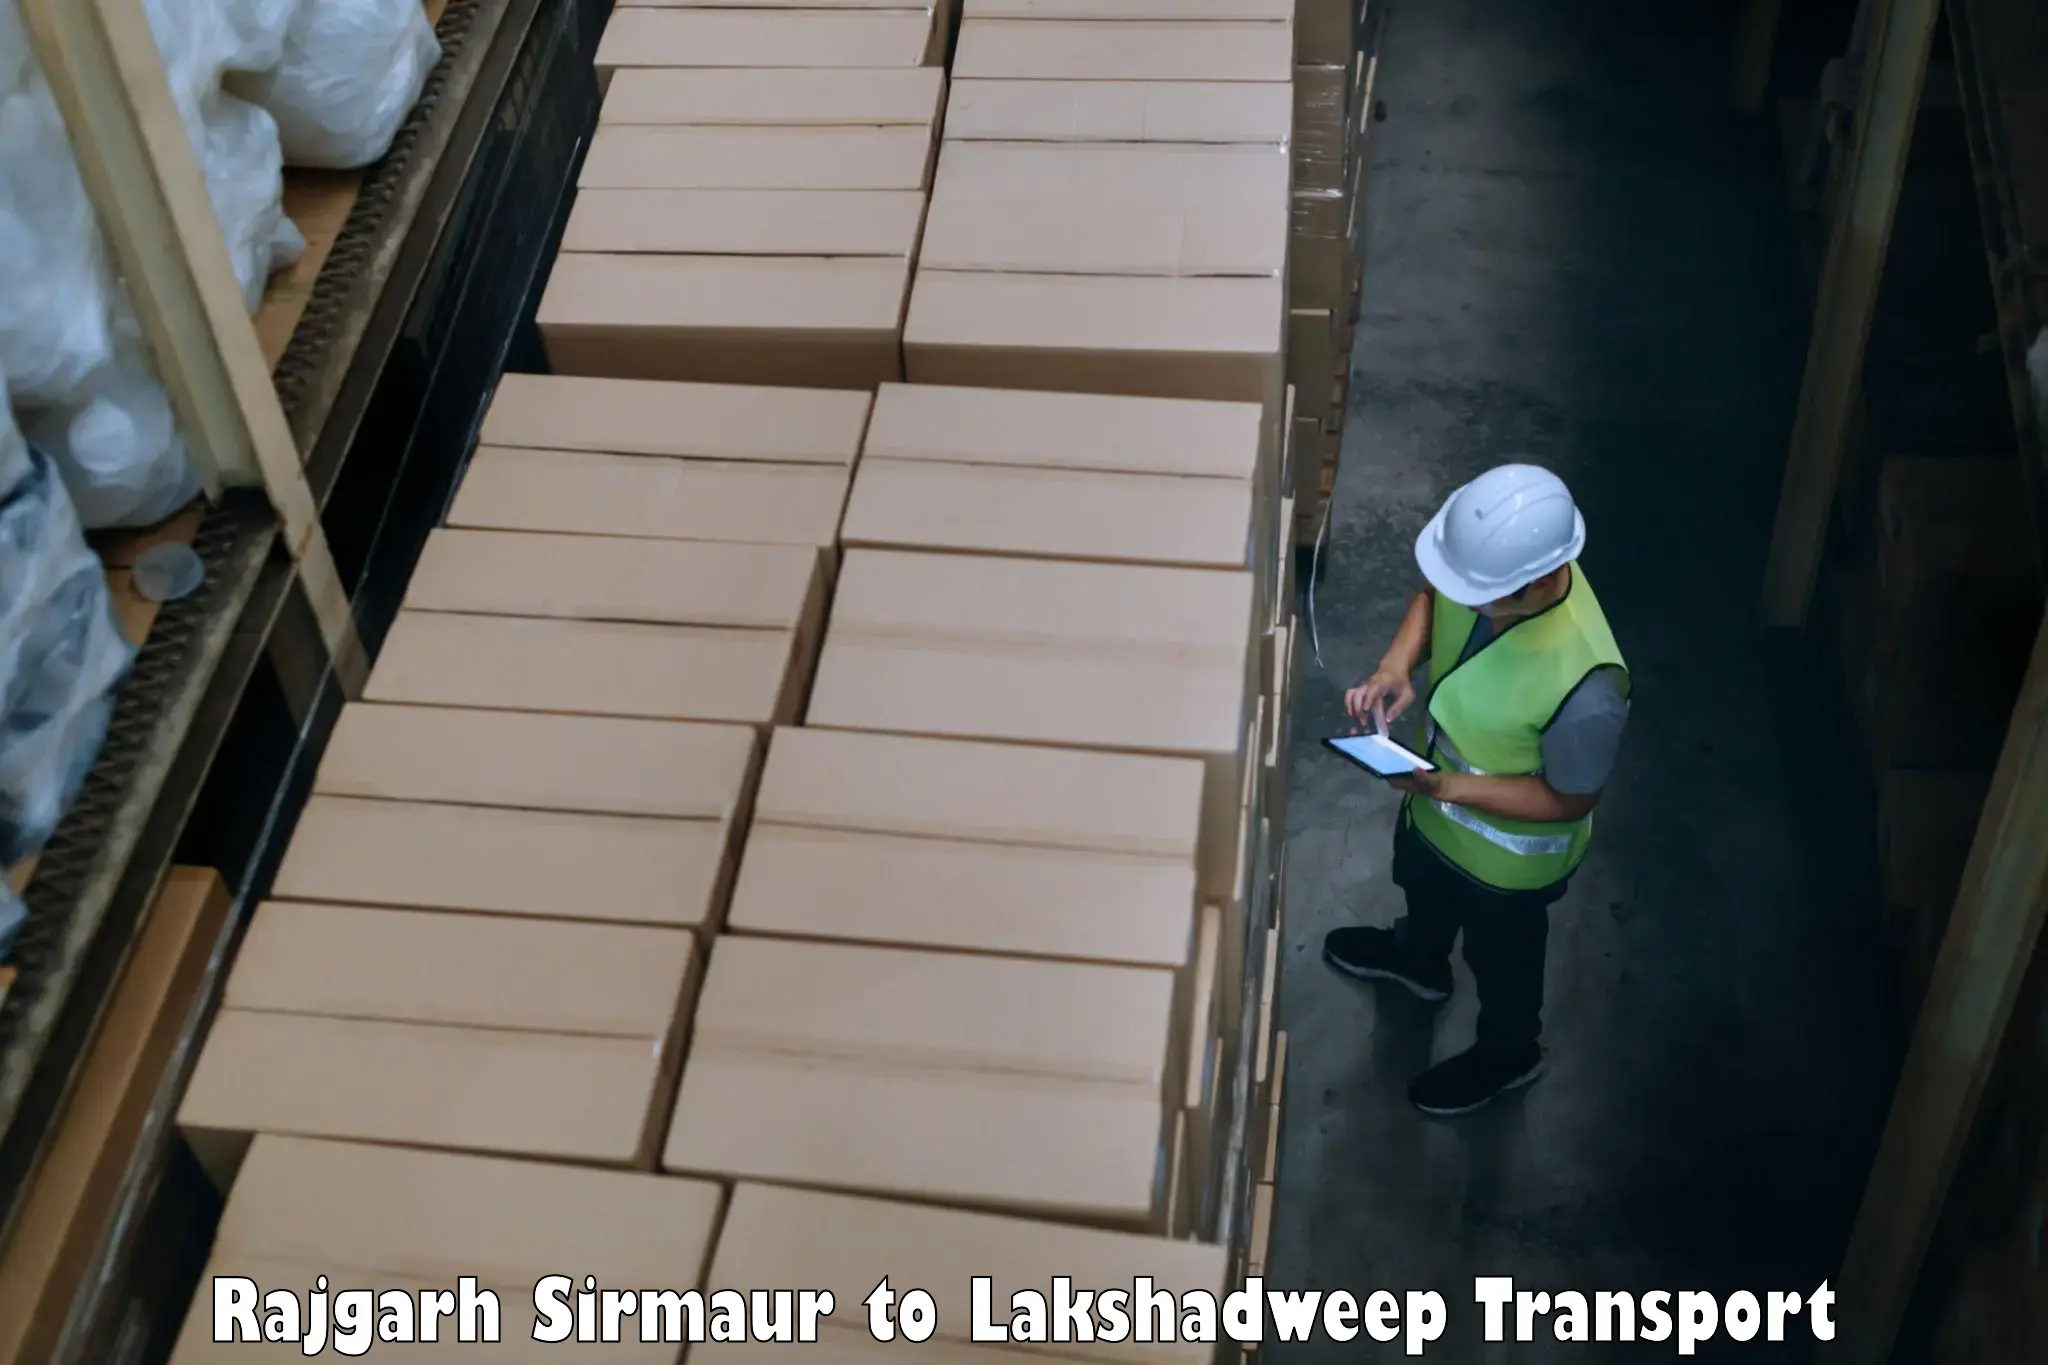 Two wheeler transport services Rajgarh Sirmaur to Lakshadweep